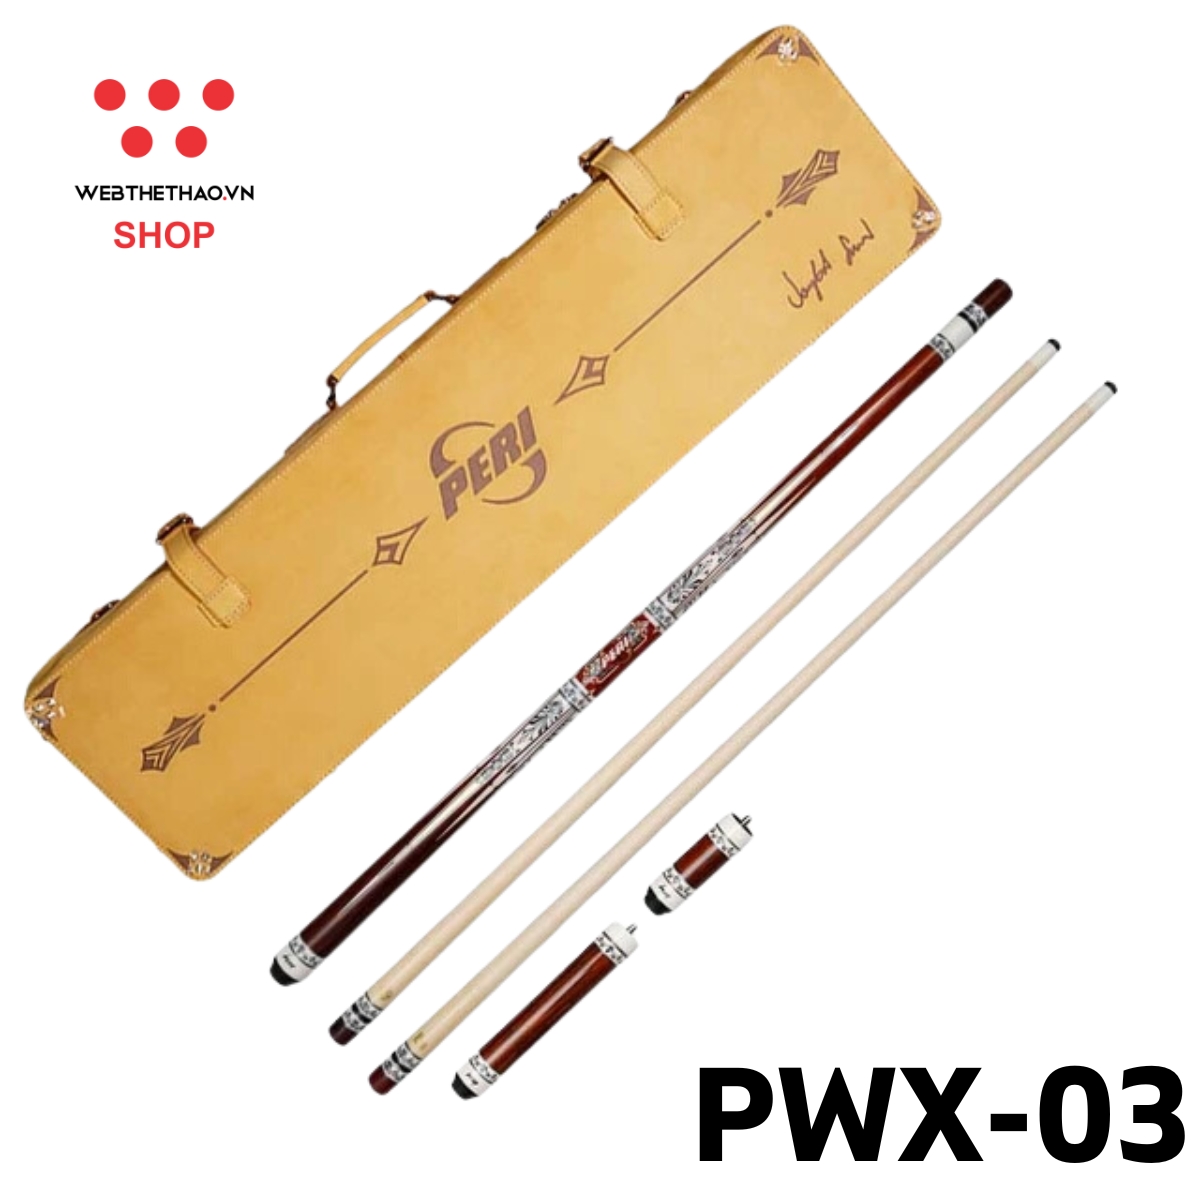 Gậy đánh bi-a Peri Limited Edition PWX-03 PR-PWX-03 - Hàng Chính Hãng